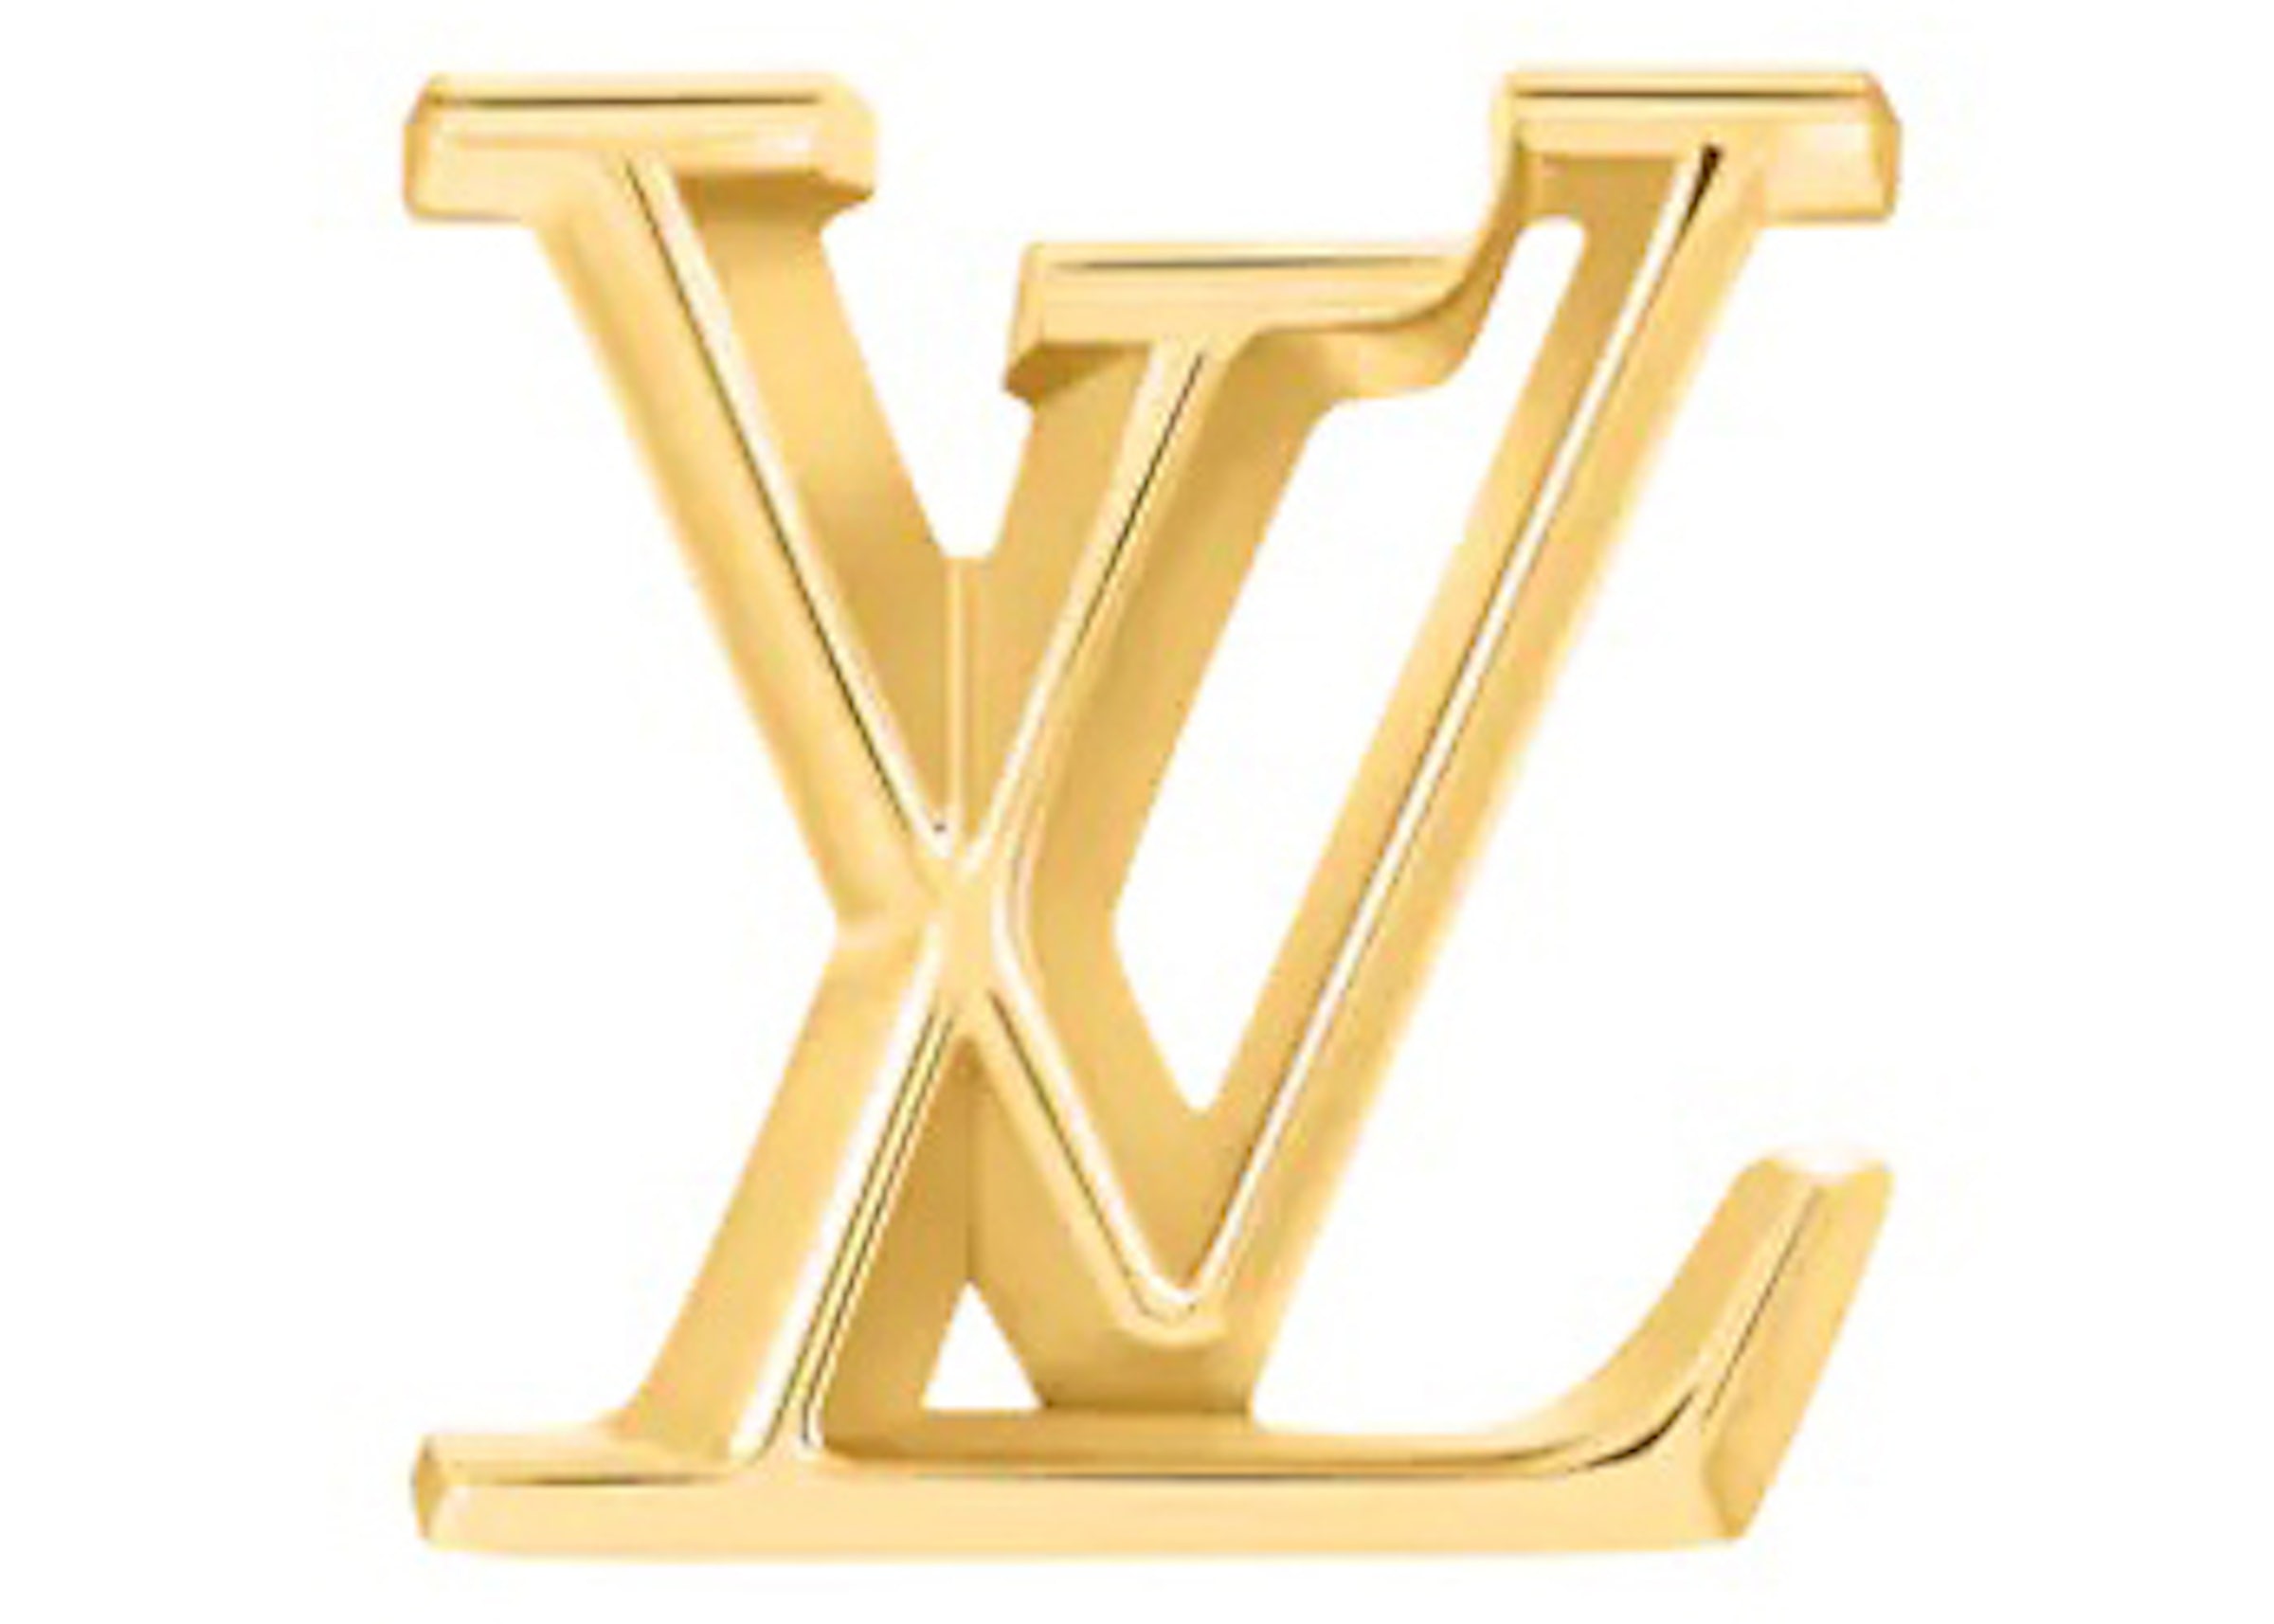 LOUIS VUITTON Puce Enplant Earrings/Earrings K18YG Yellow Gold